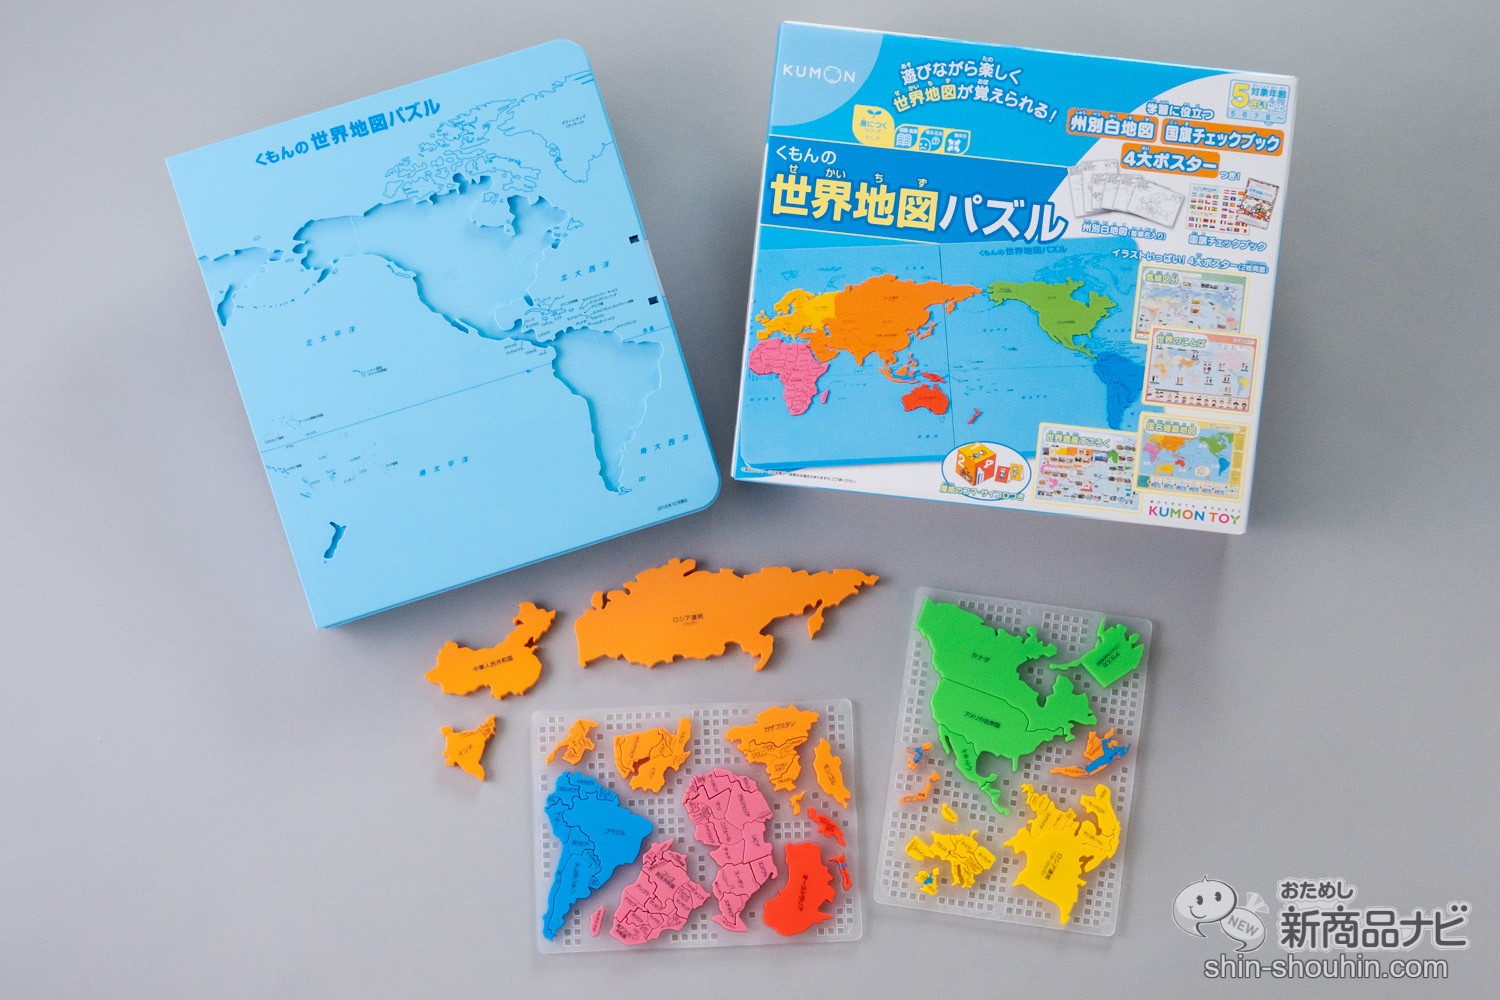 くもんの世界地図パズル - ジグソーパズル